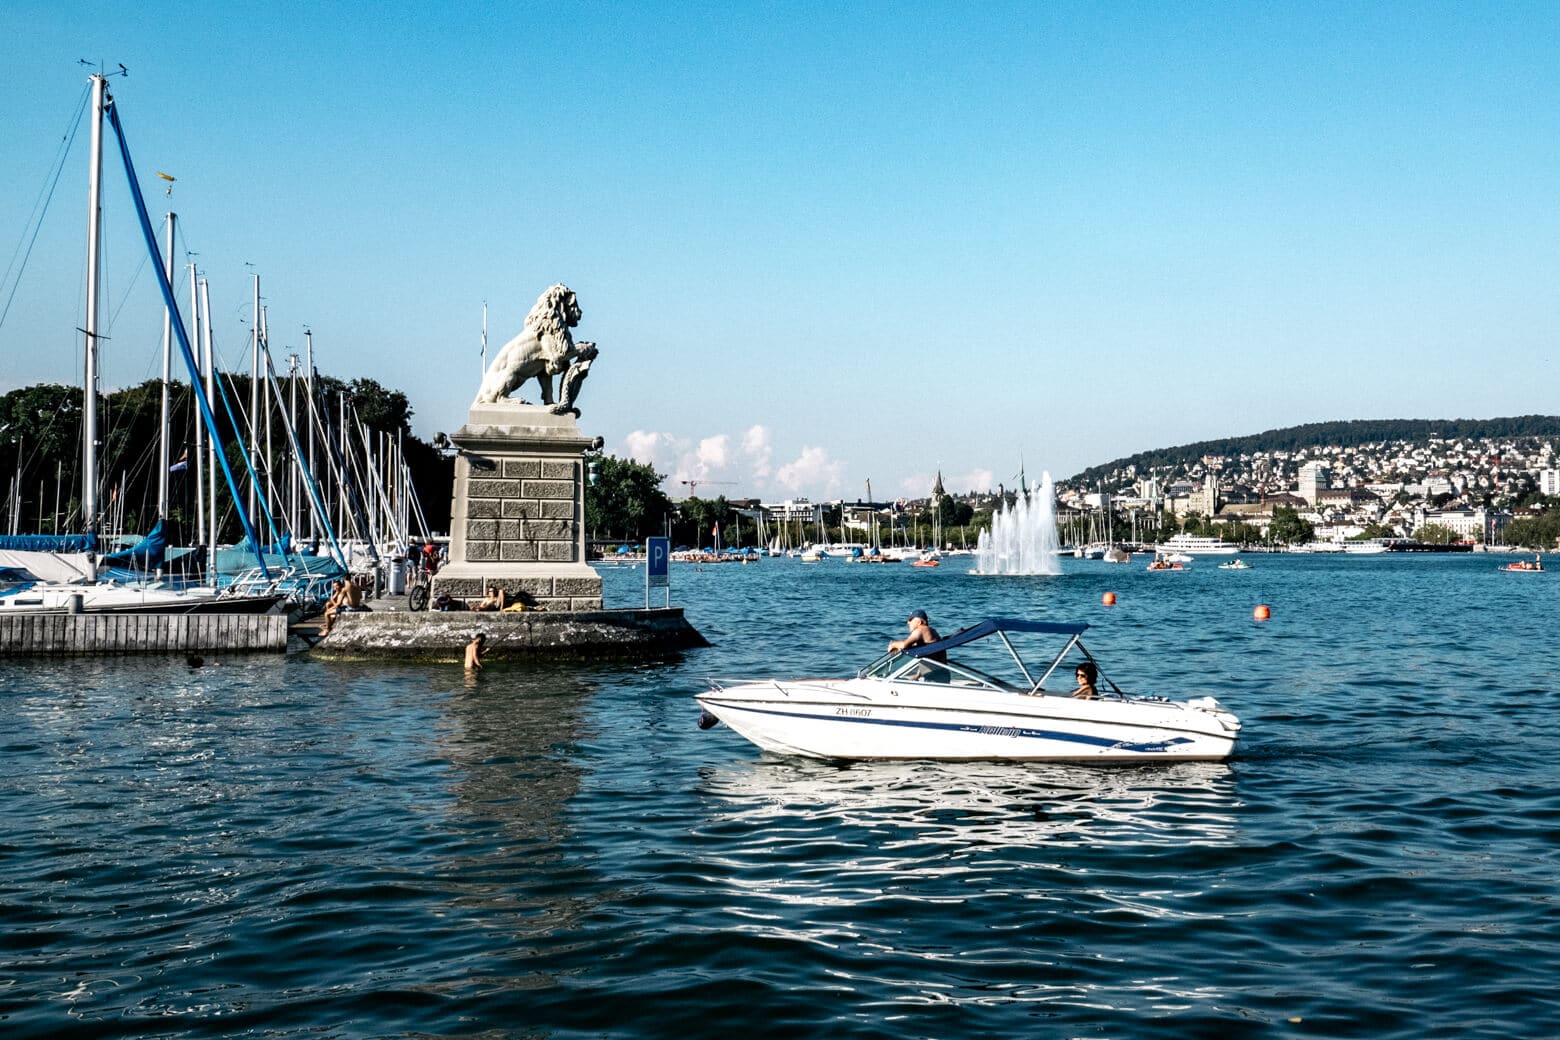 Lake Zurich, Switzerland